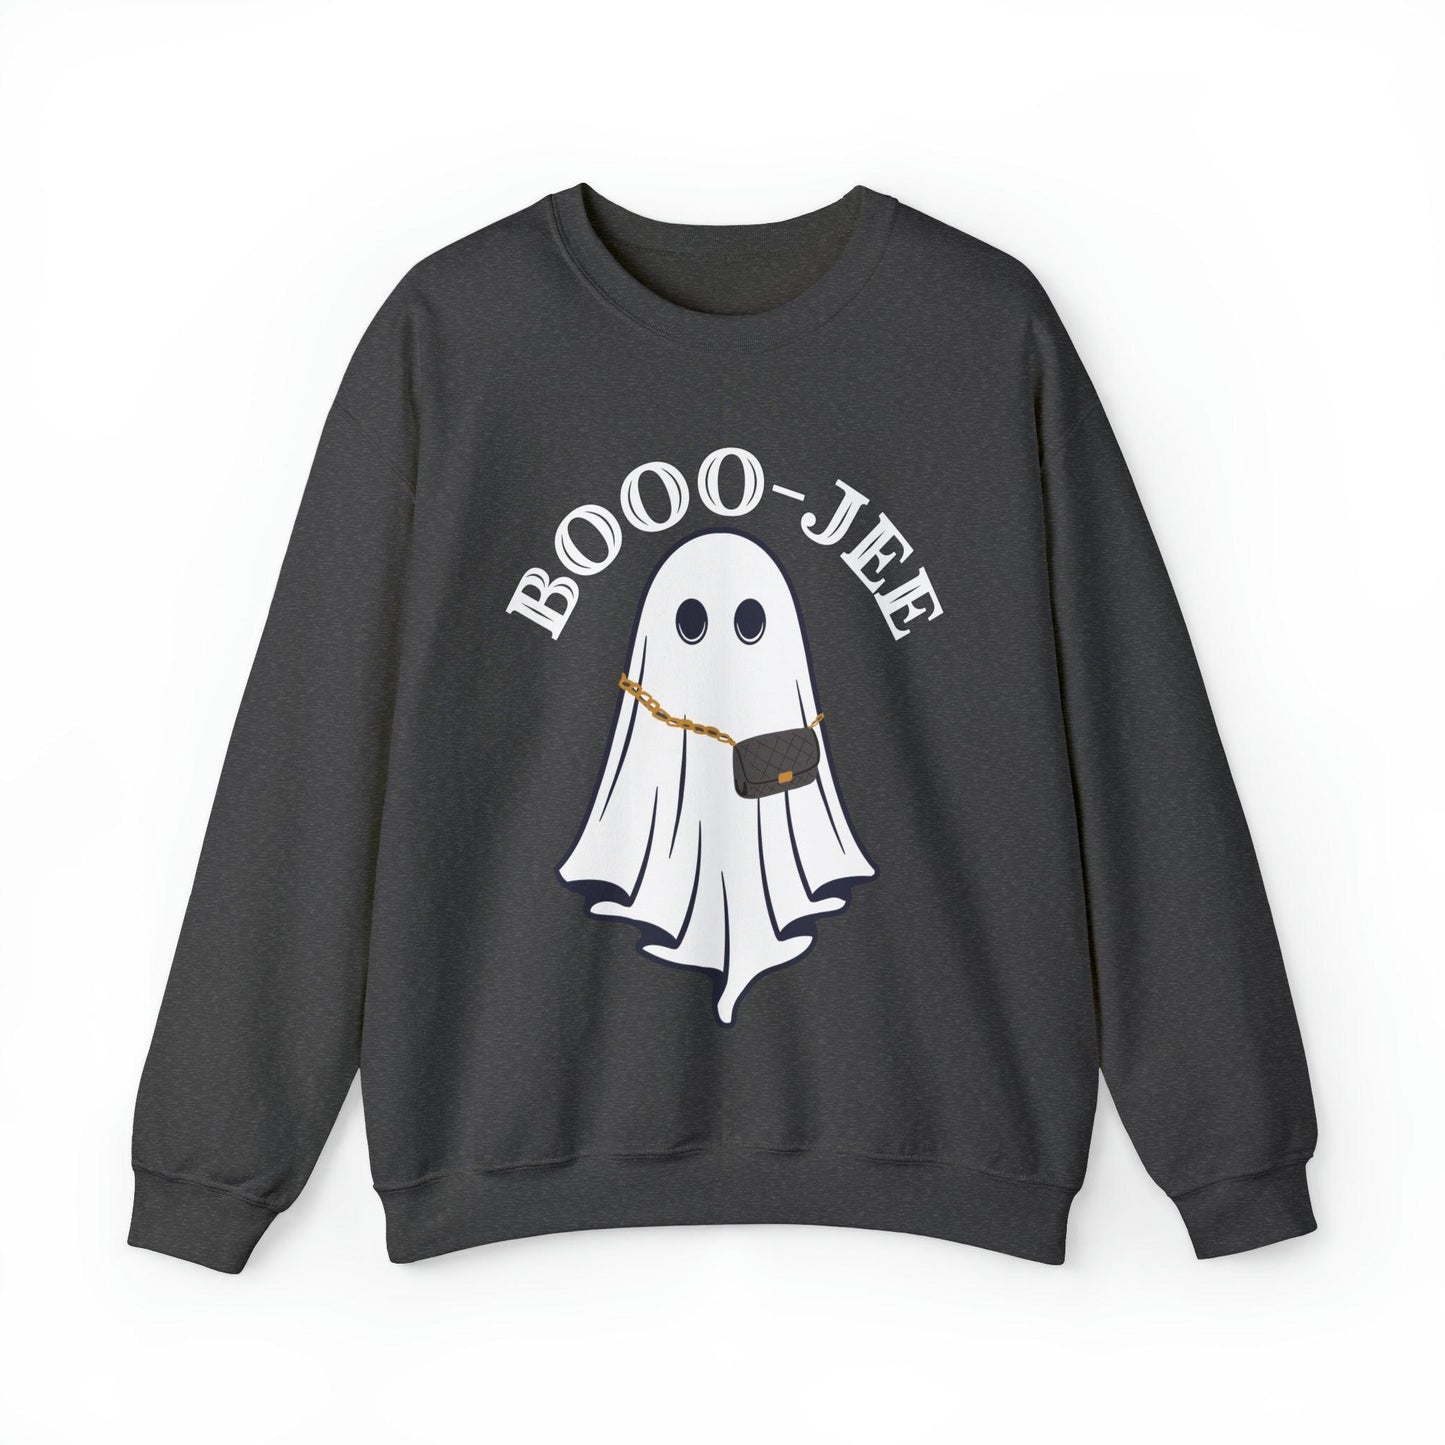 Booo-Jee Halloween Sweatshirt, Boo Halloween Sweatshirt, Spooky Ghost Sweatshirt, Boo Jee Shirt, Halloween Ghost Sweatshirt, Halloween Boo Shirt - Giftsmojo